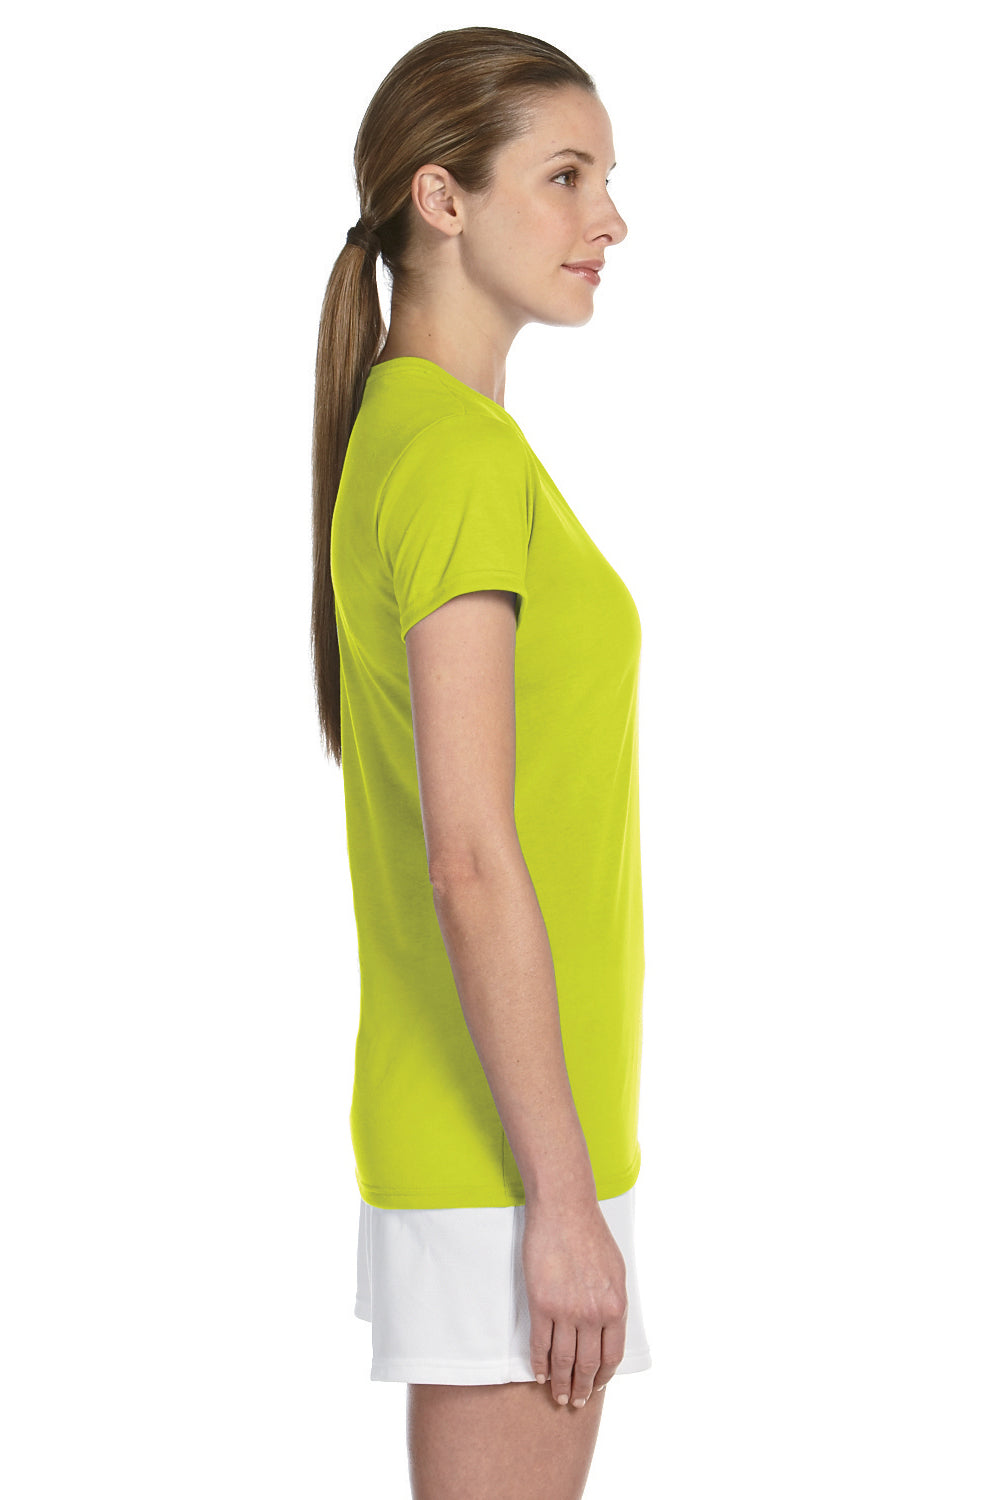 Gildan G420L Womens Performance Jersey Moisture Wicking Short Sleeve Crewneck T-Shirt Safety Green Side